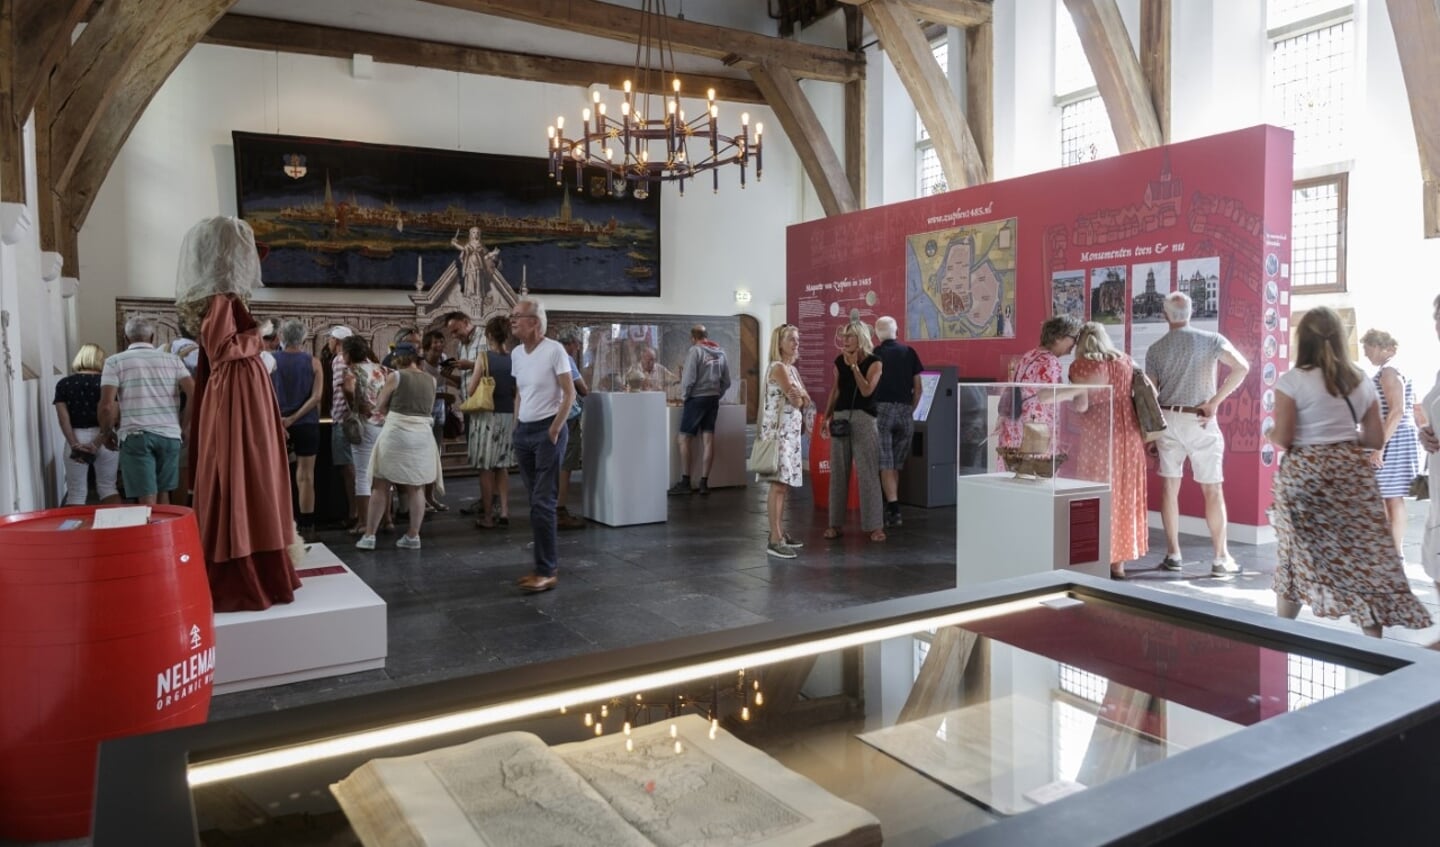 De tentoonstelling In de voetsporen van de Hanze trok veel belangstelling. Foto: Patrick van Gemert/Zutphens Persbureau